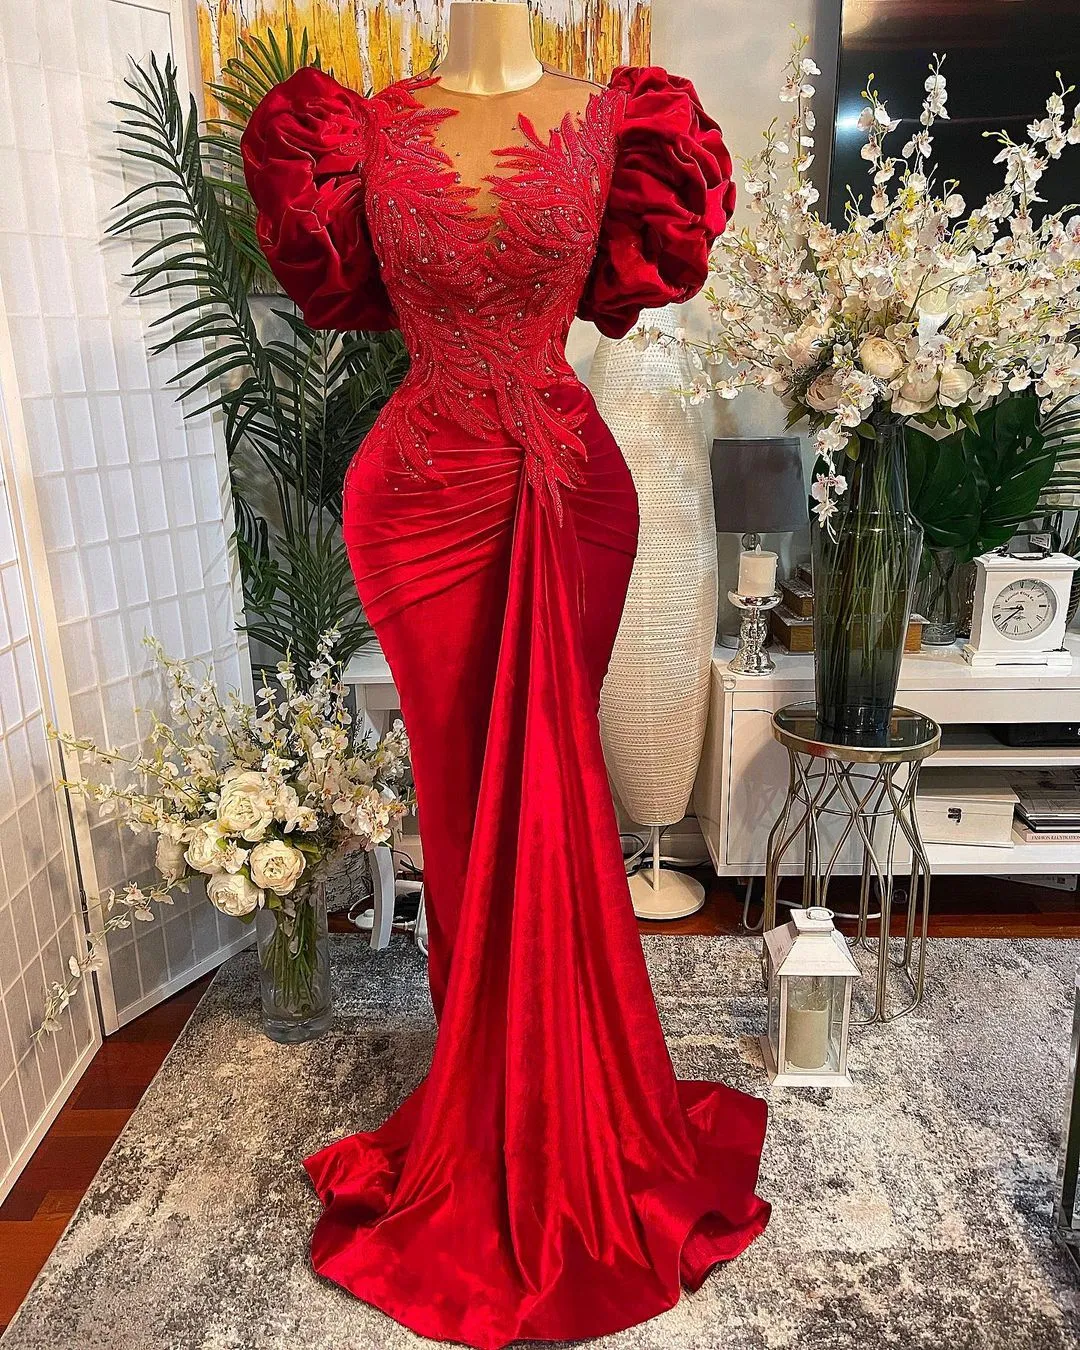 2021 Plus rozmiar arabski Aso Ebi czerwona syrenka koronkowe suknie balowe zroszony przezroczysta szyja aksamitna wieczorowa formalna impreza druga recepcja suknie sukienka ZJ446